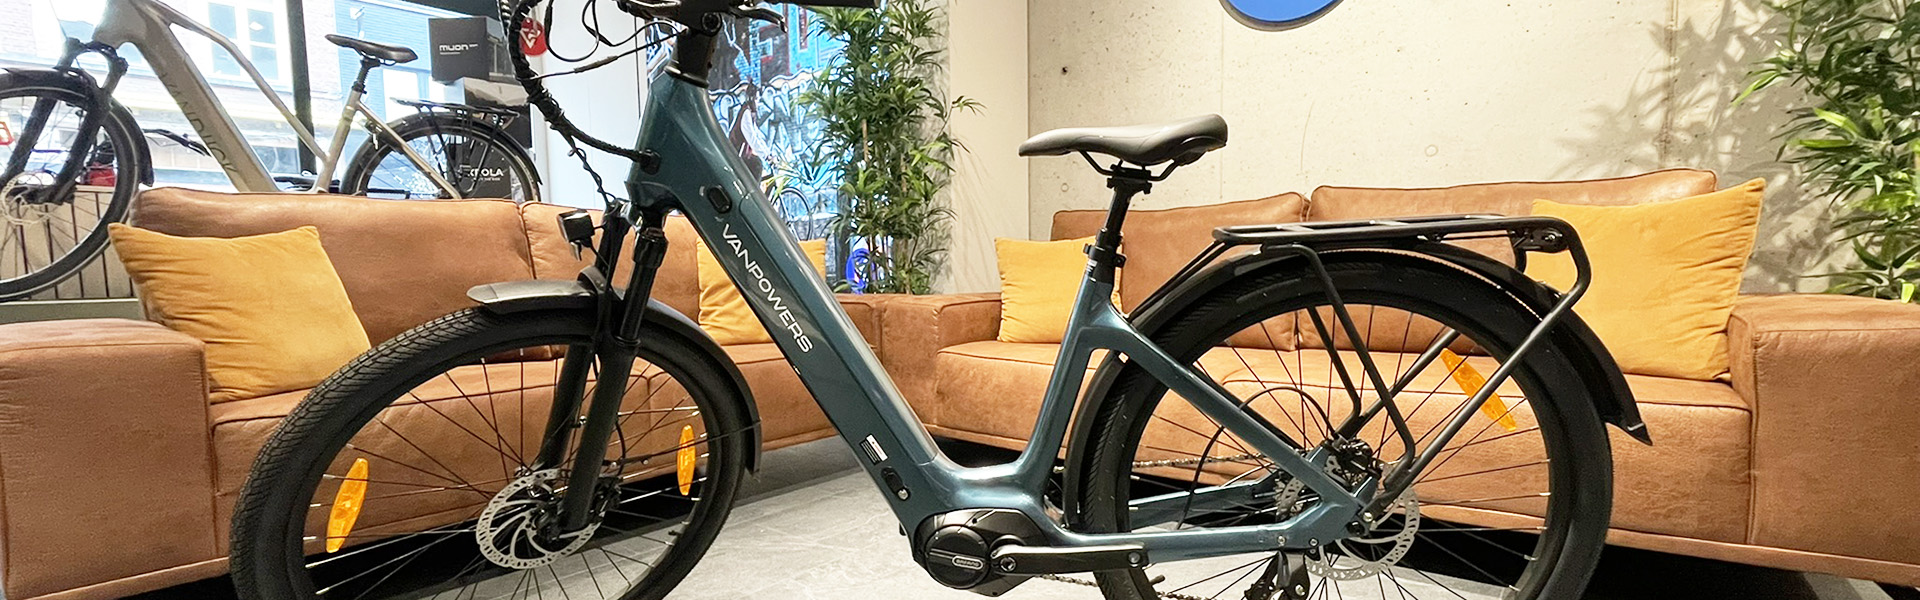 Ontdek de kracht en stijl van de VanPowers elektrische fiets, beschikbaar bij onze fietsenwinkel in Bornem.